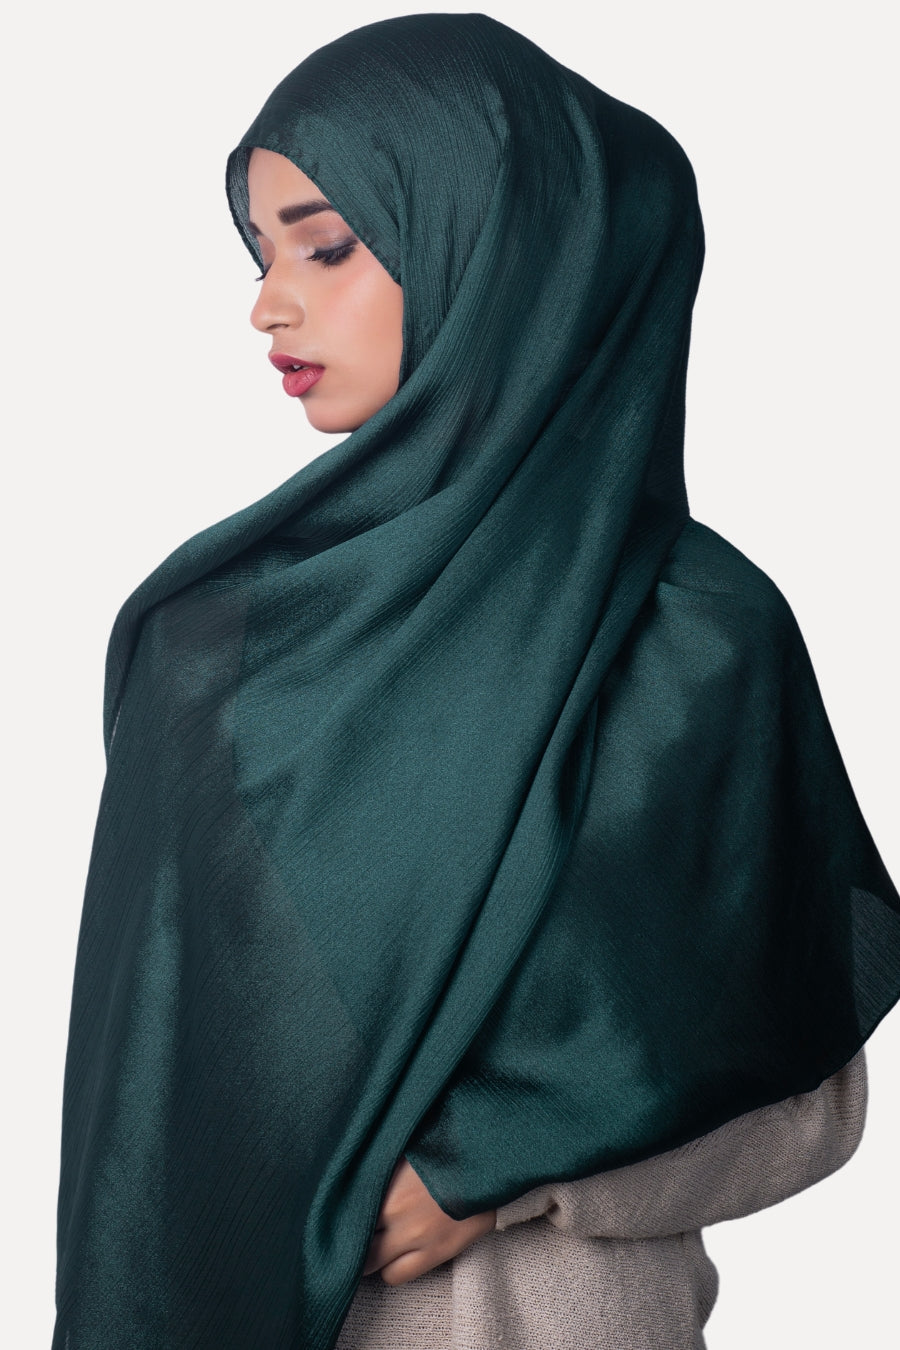 Crinkle Chiffon Hijab - Majestic (Shimmer)